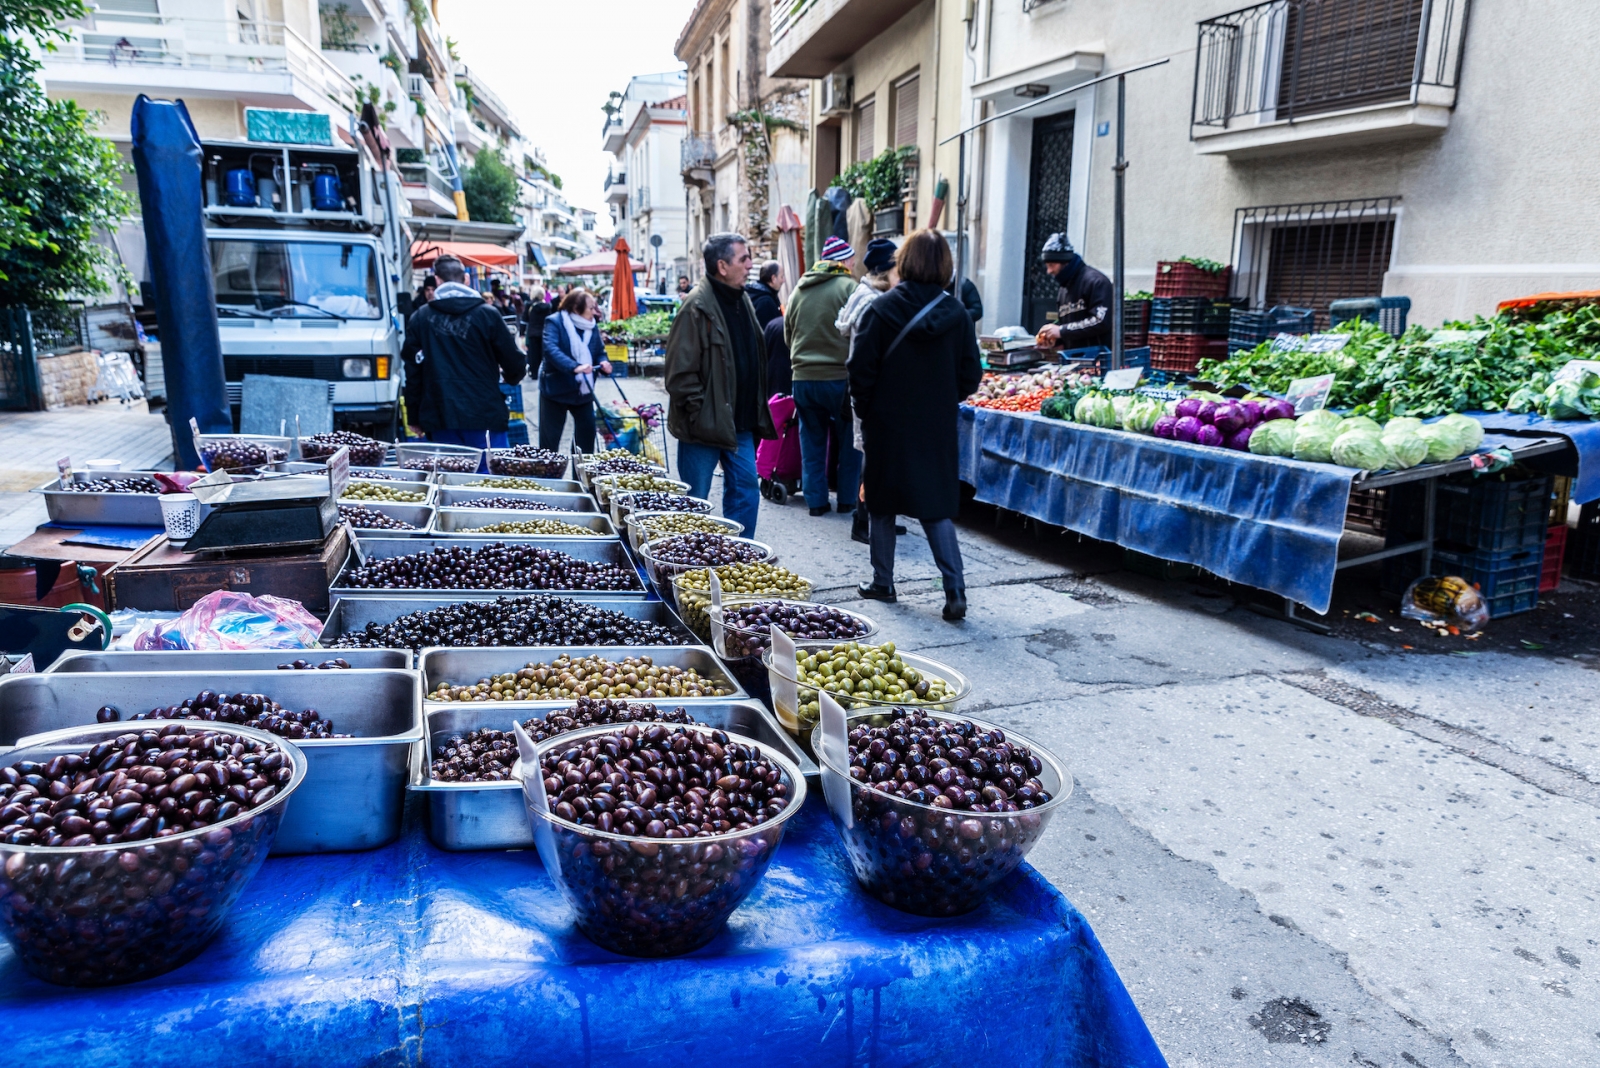 Bauernmarkt auf einer Straße in Athen, Griechenland